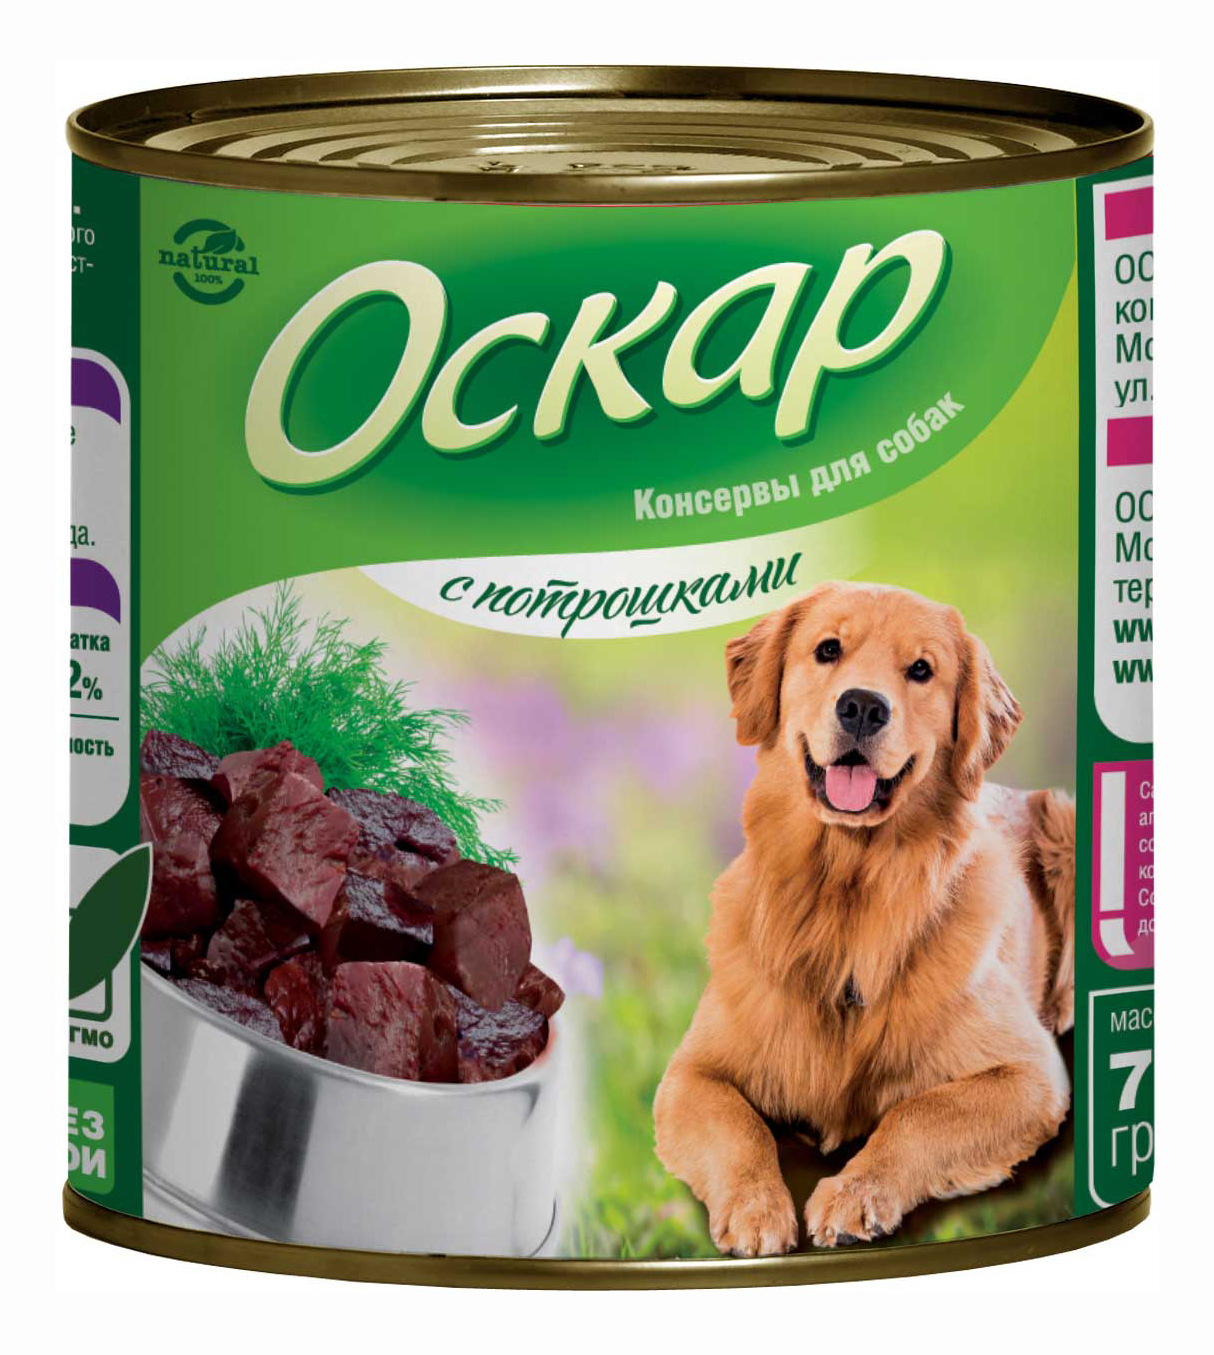 Консервы для собак Оскар, потрошки, 9шт по 750г